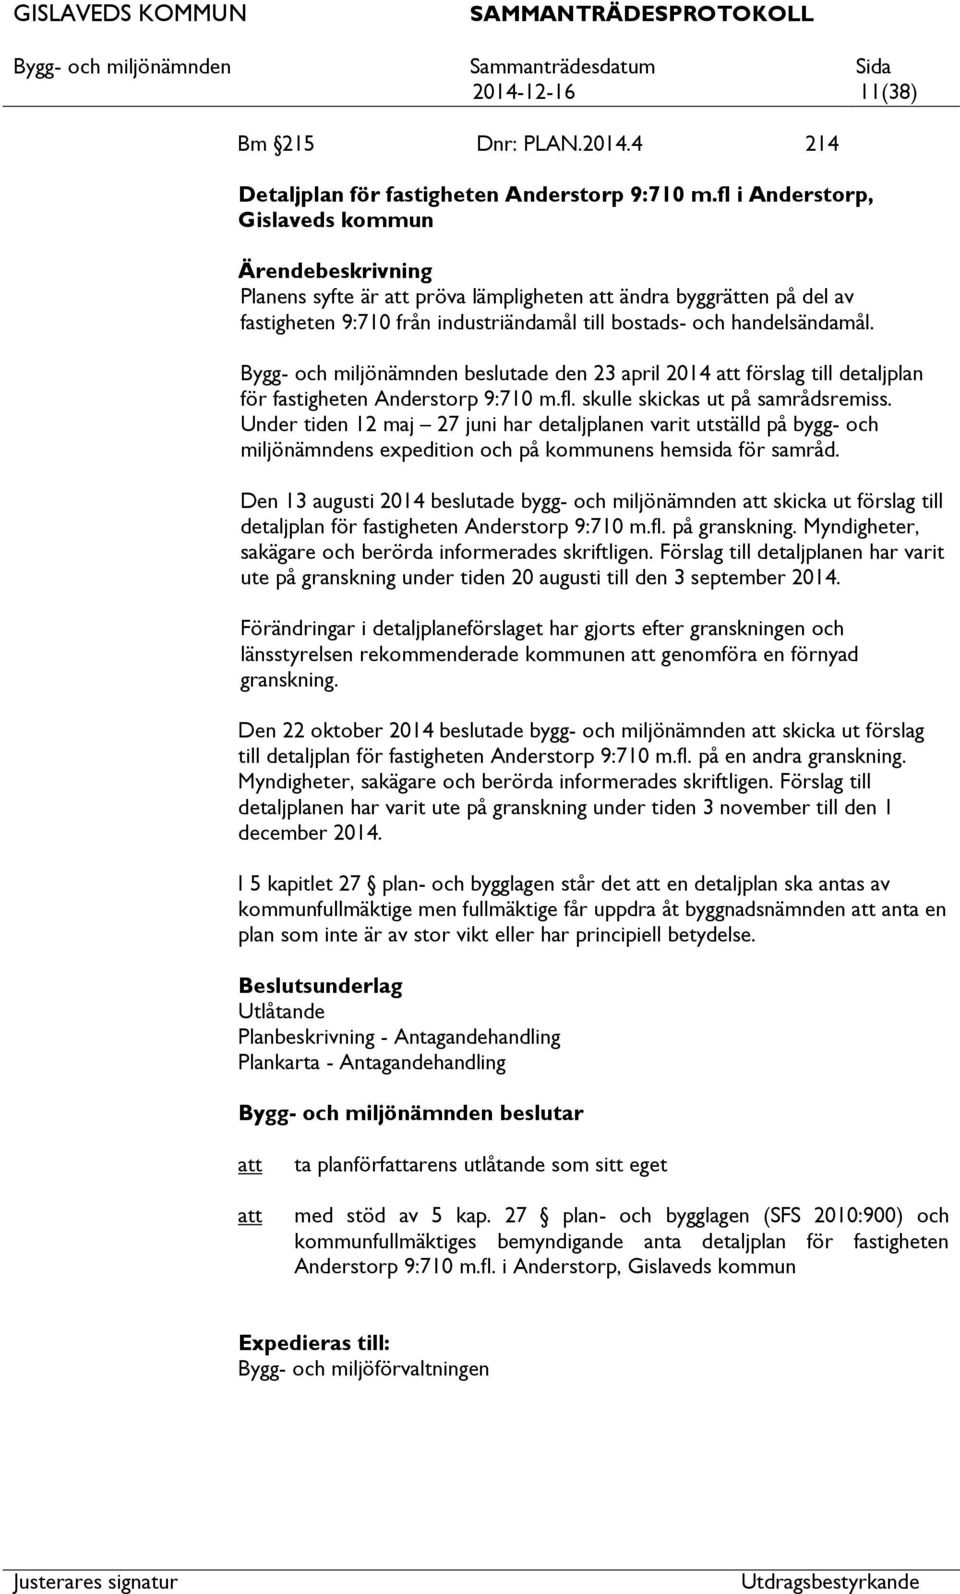 Bygg- och miljönämnden beslutade den 23 april 2014 förslag till detaljplan för fastigheten Anderstorp 9:710 m.fl. skulle skickas ut på samrådsremiss.